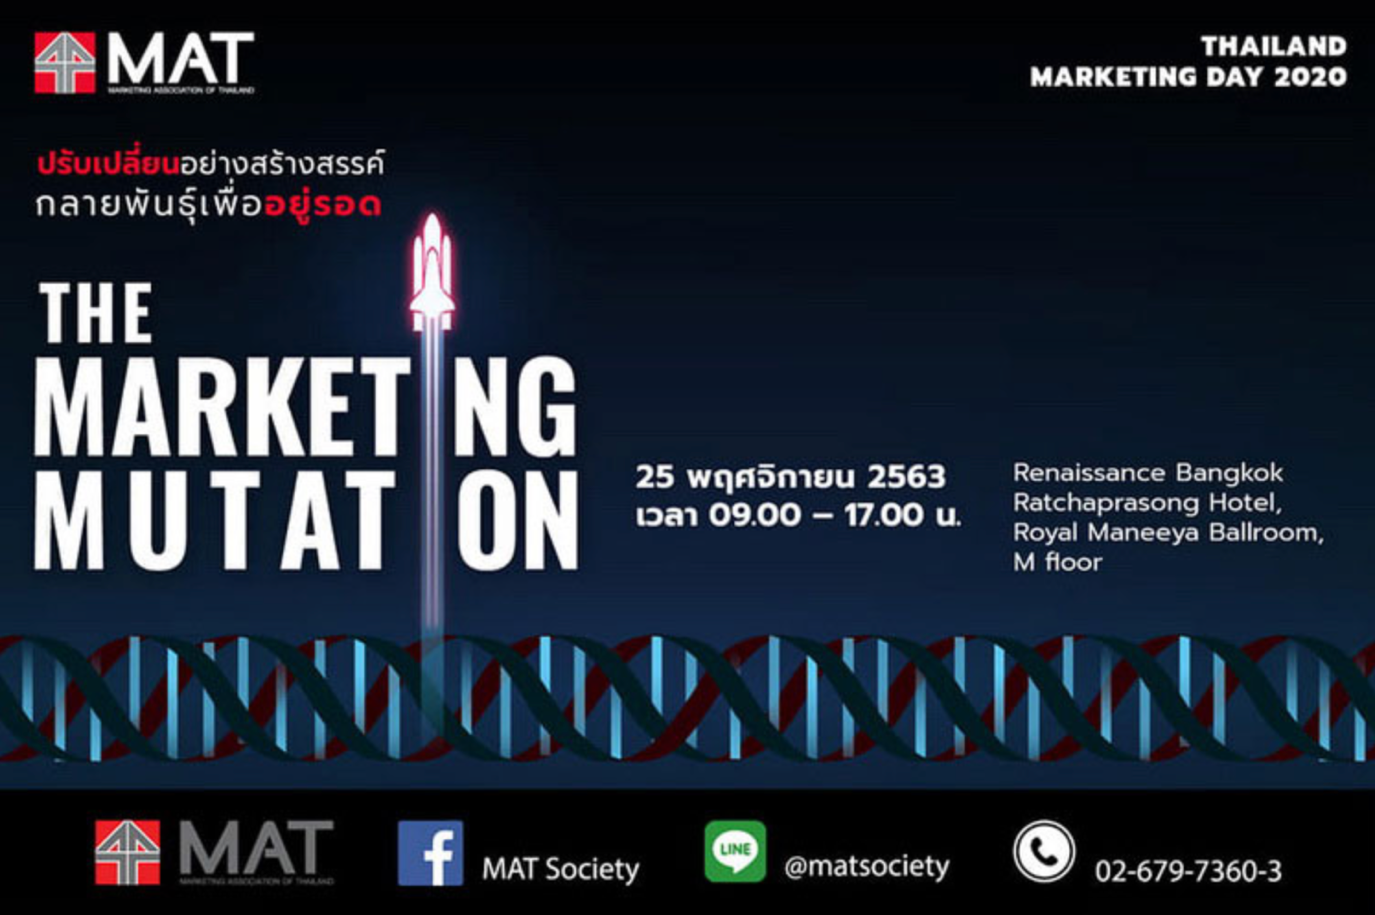 รวมเทรนด์ความรู้ของโลกธุรกิจ และสุดยอดกูรู ใน Thailand Marketing Day 2020